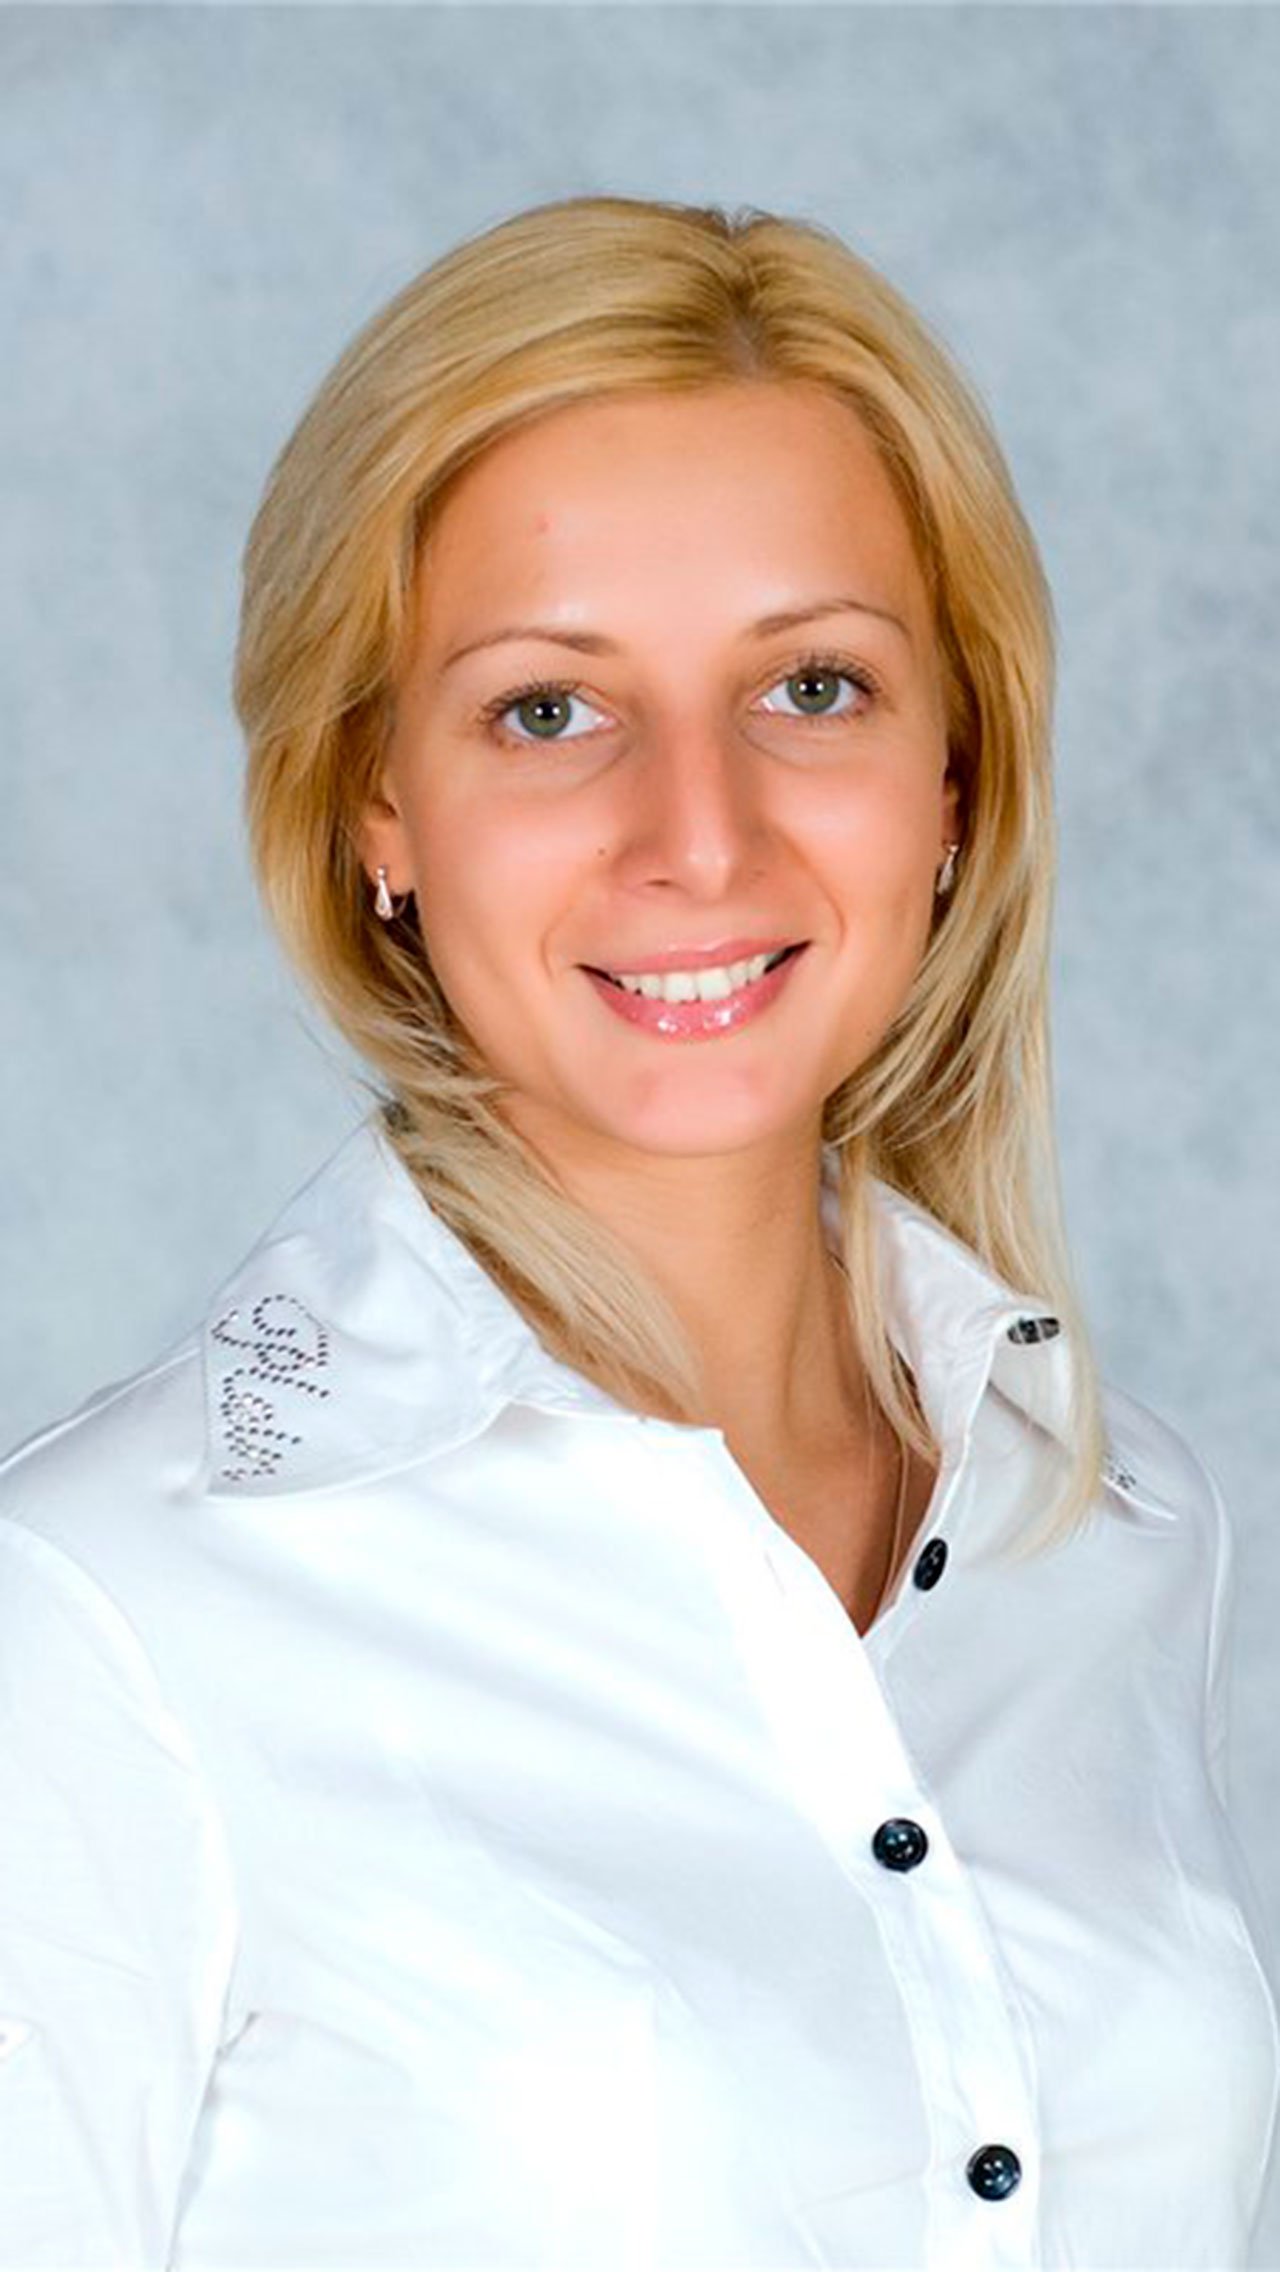 Первой гимнасткой в истории, выигравшей две Олимпиады в групповых упражнениях, стала наша Наталья Лаврова. На её счету пять золотых медалей ЧМ. Наталья в 2010 году трагически погибла в ДТП.